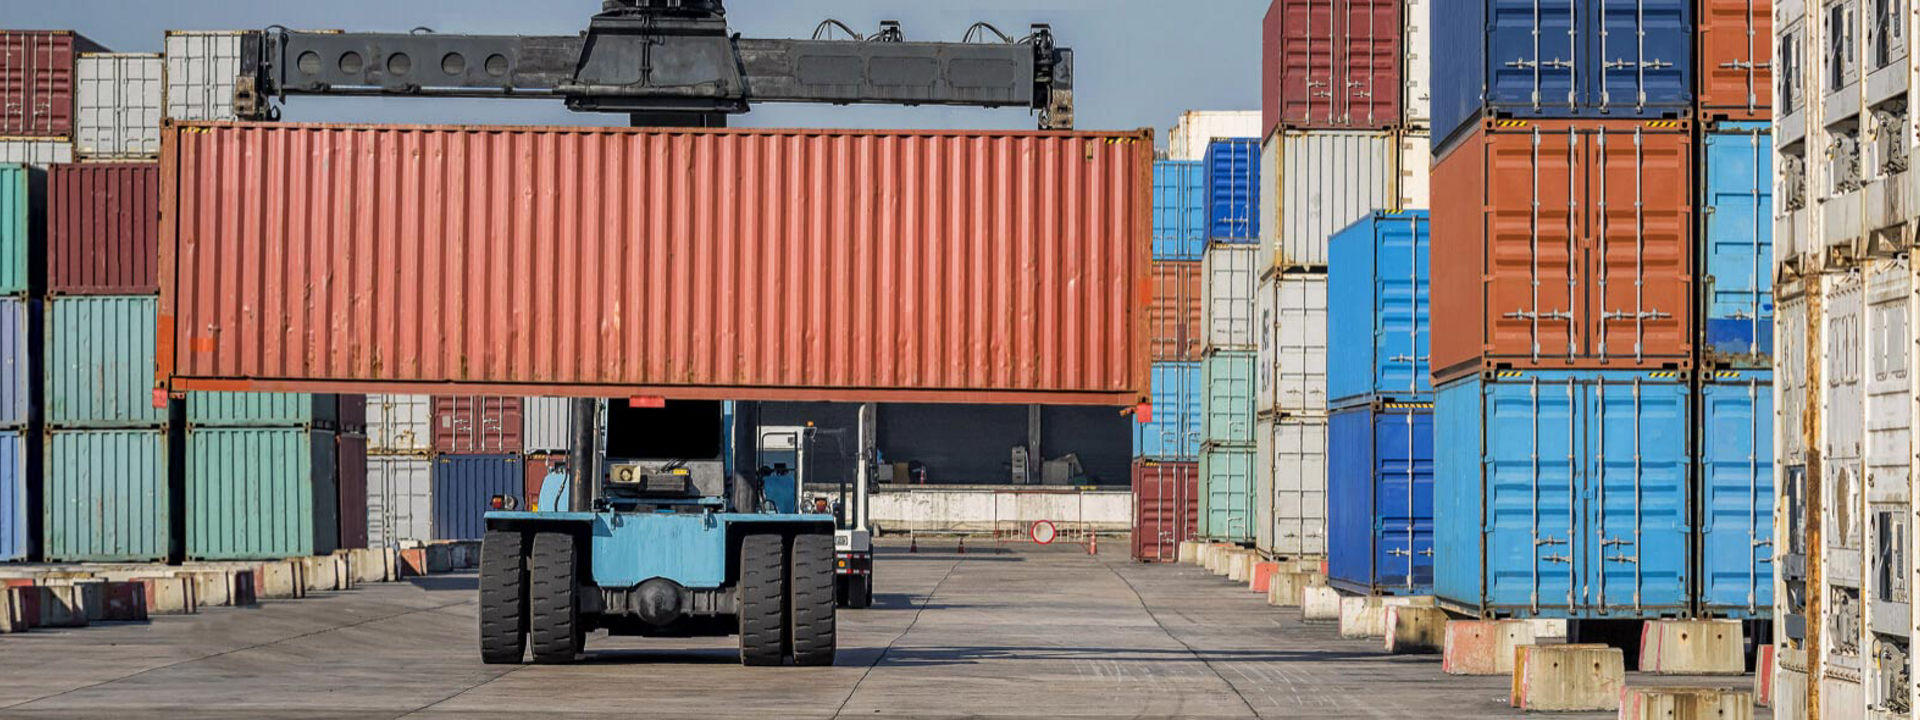 En gaffeltruck utstyrt med terrengdekk fra Bridgestone beveger fraktcontainere over en stor industrihavn